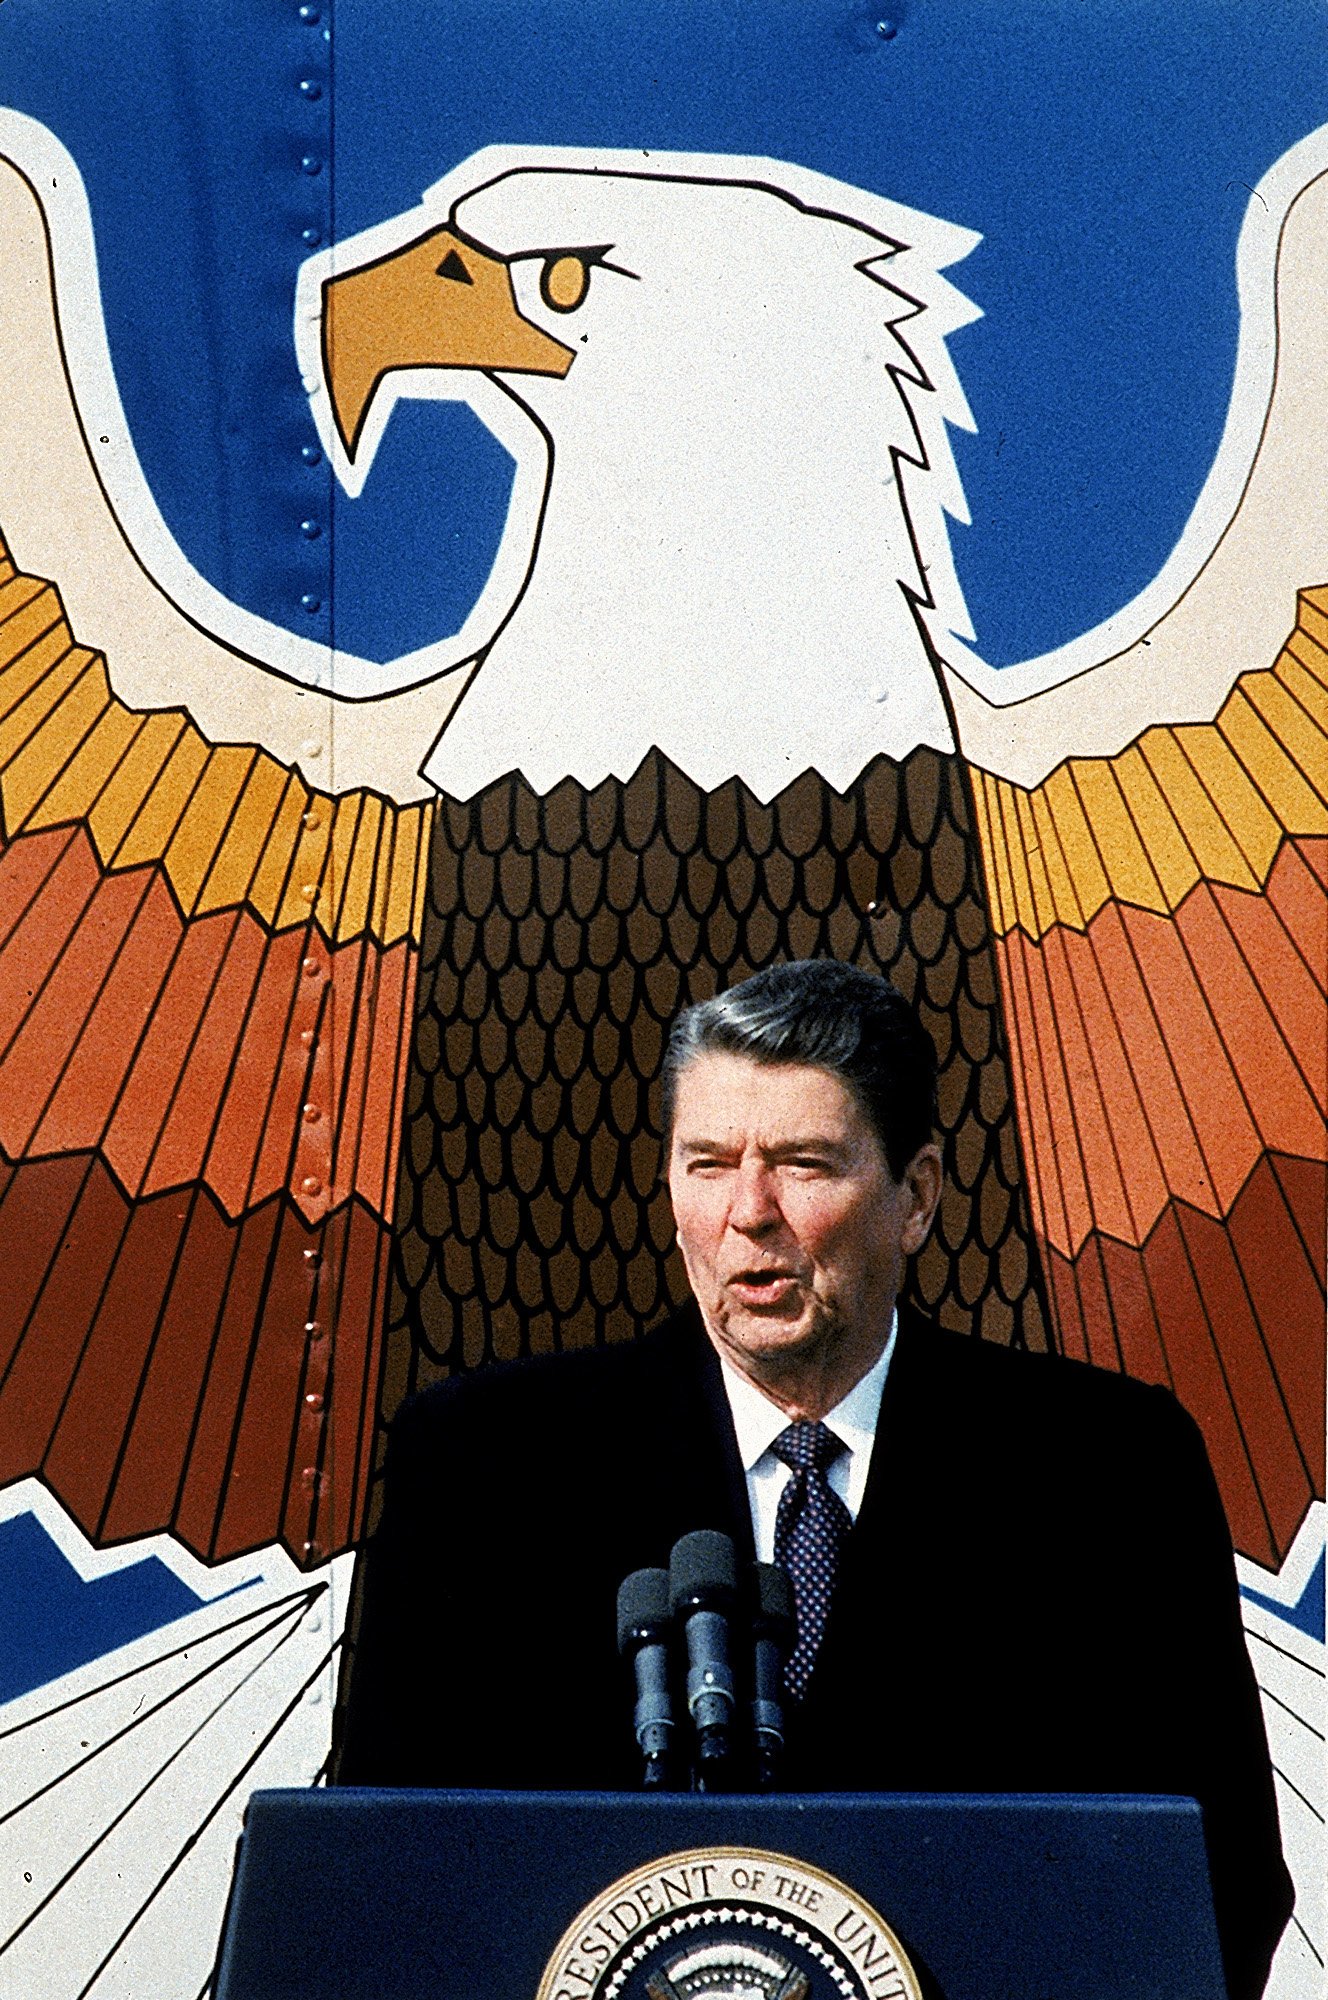 Der Aufruf von Präsident Reagan im Jahr 1987, die Berliner Mauer einzureißen, trug zum Ende des Kalten Krieges bei